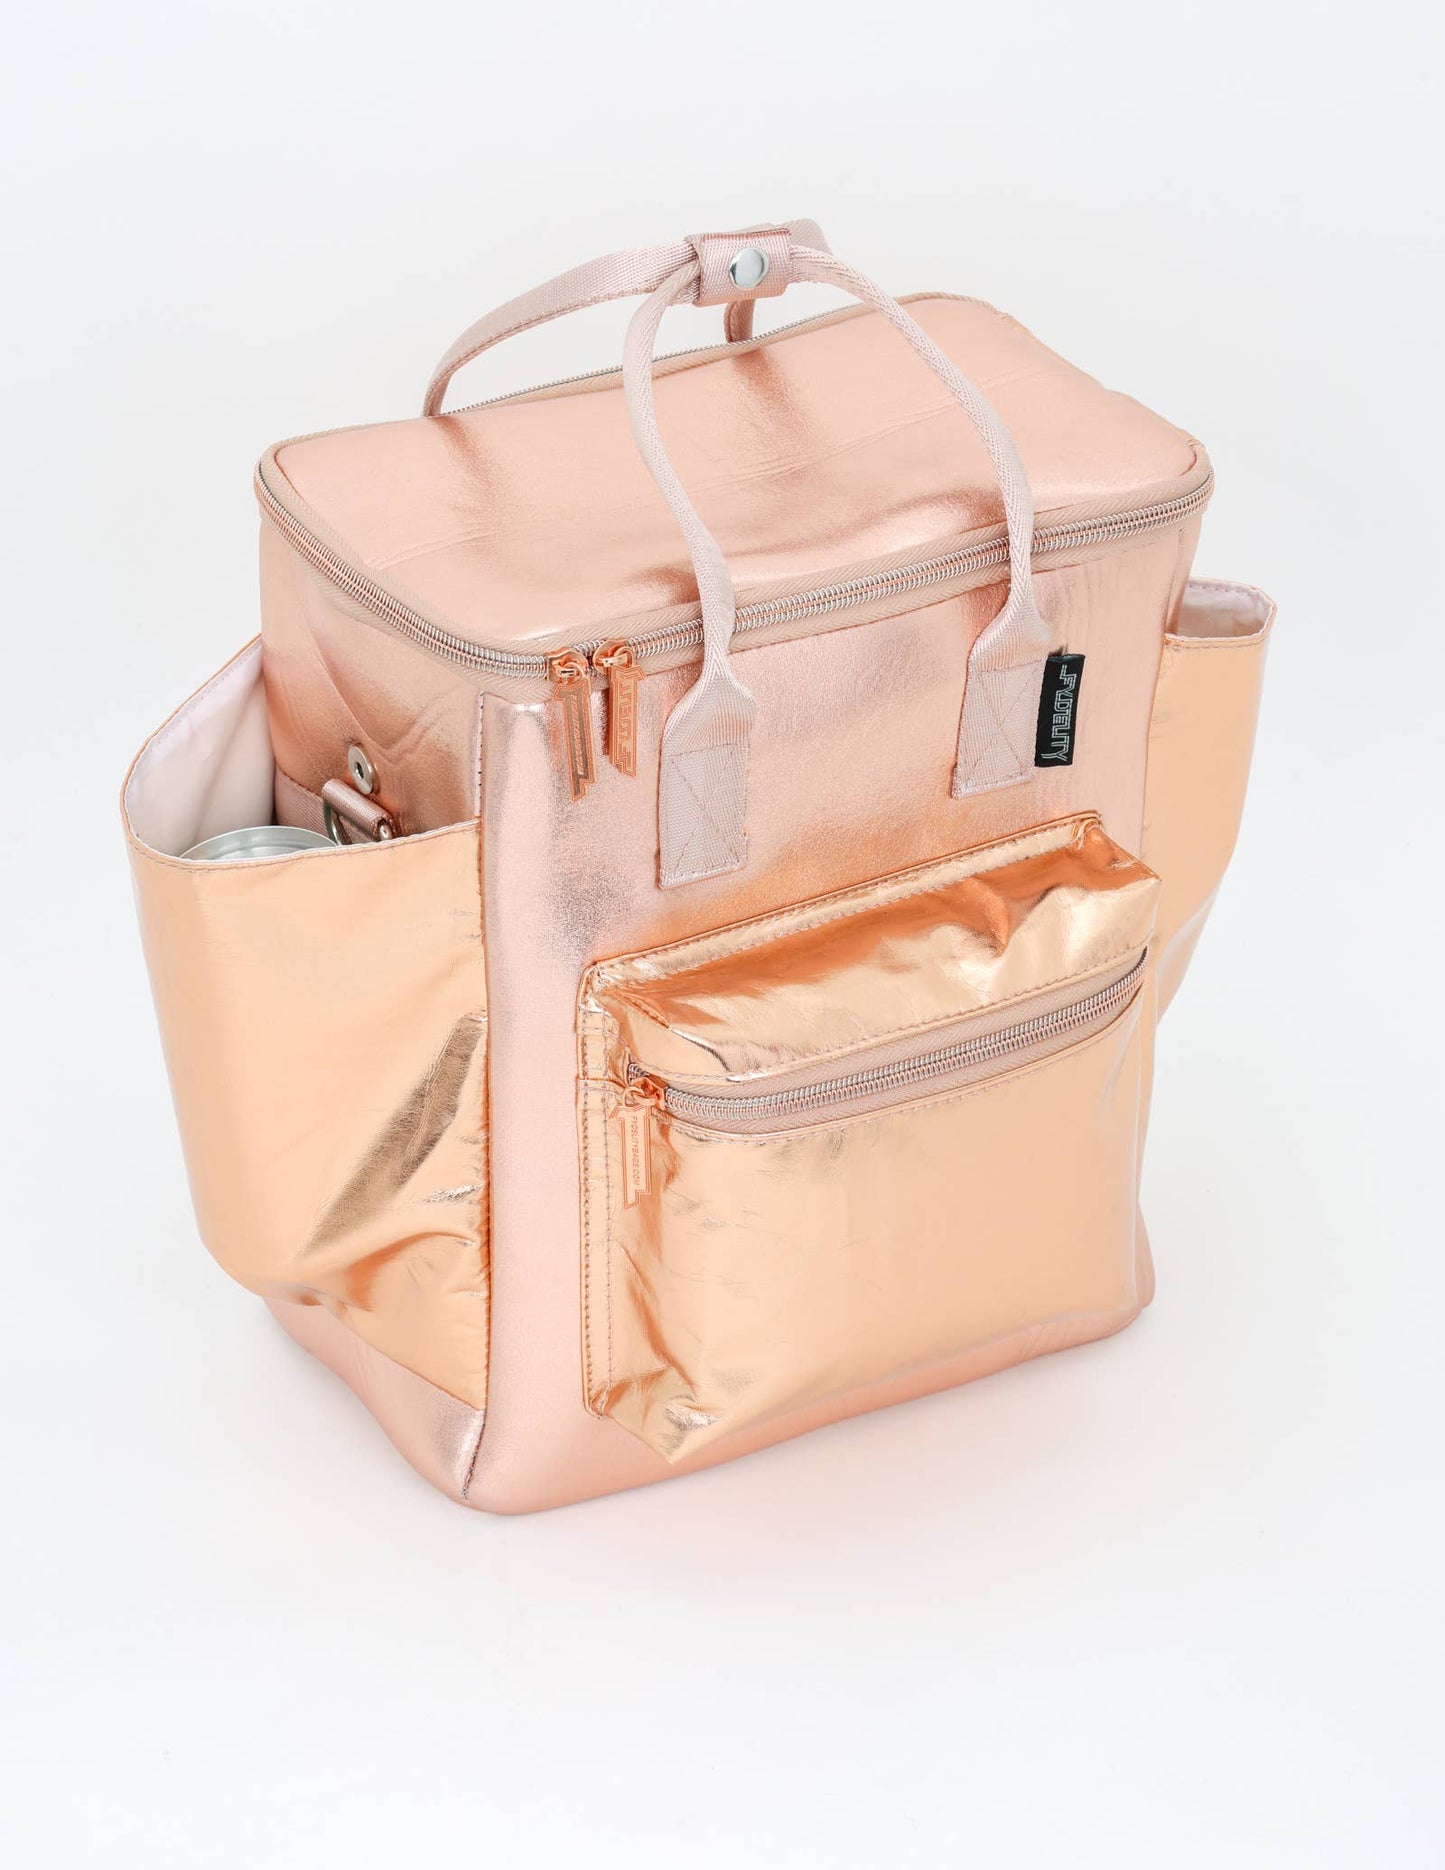 Rose Gold Rackpack StanCan 12Pak Fashion Cooler Bag